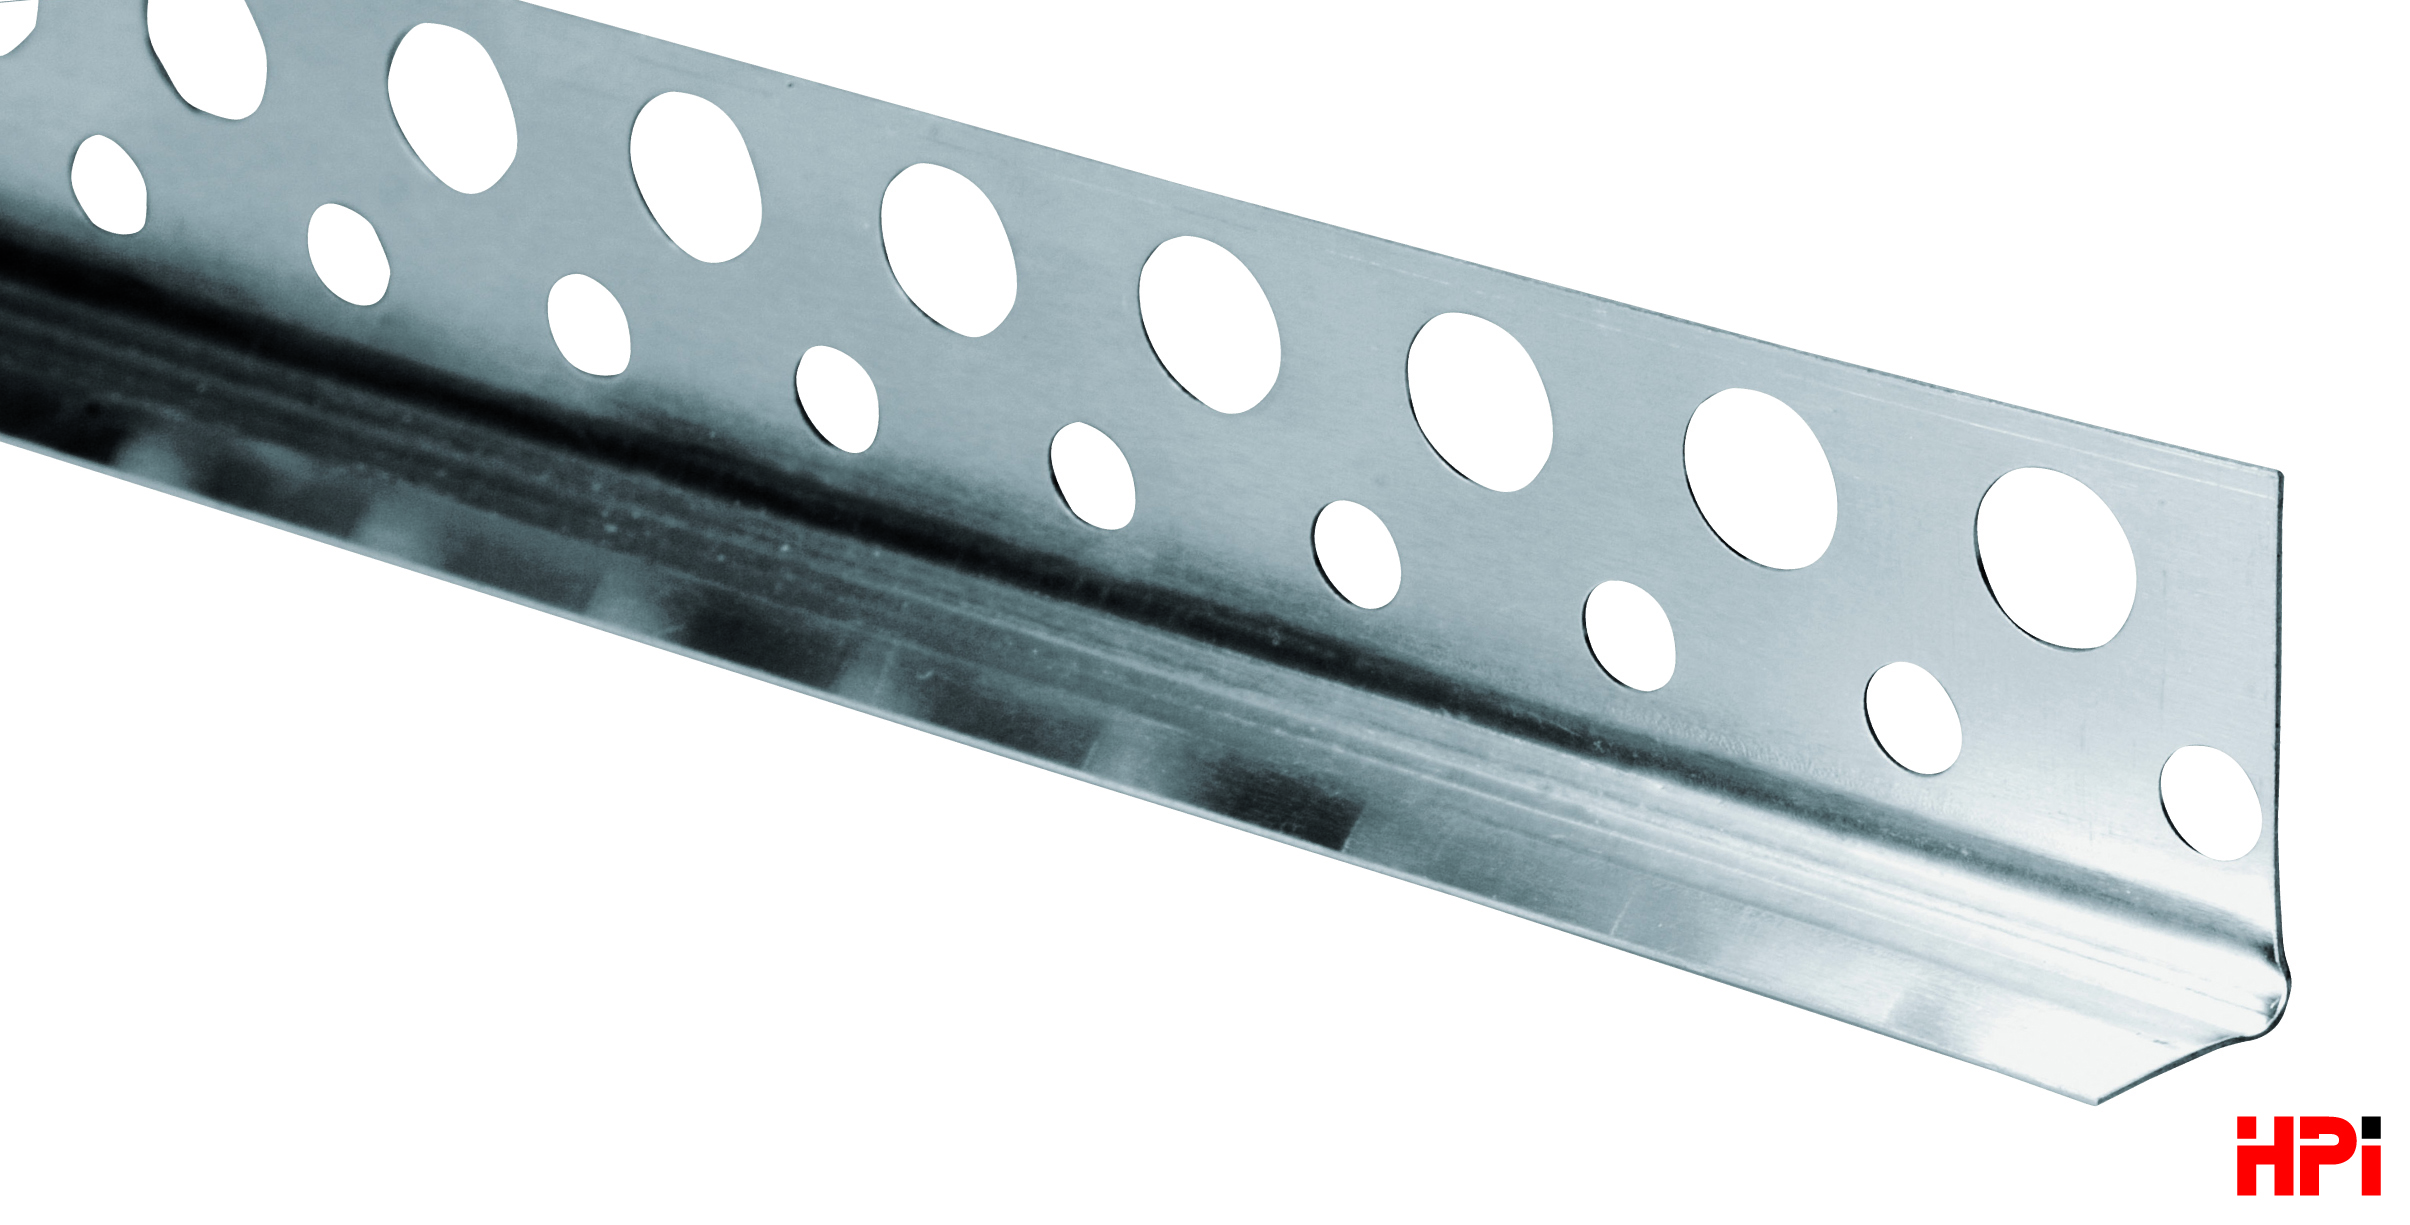 HPI Lišta na ochranu rohů pro sádrokarton - hliník lesklý G profil, tl. 0,35 mm